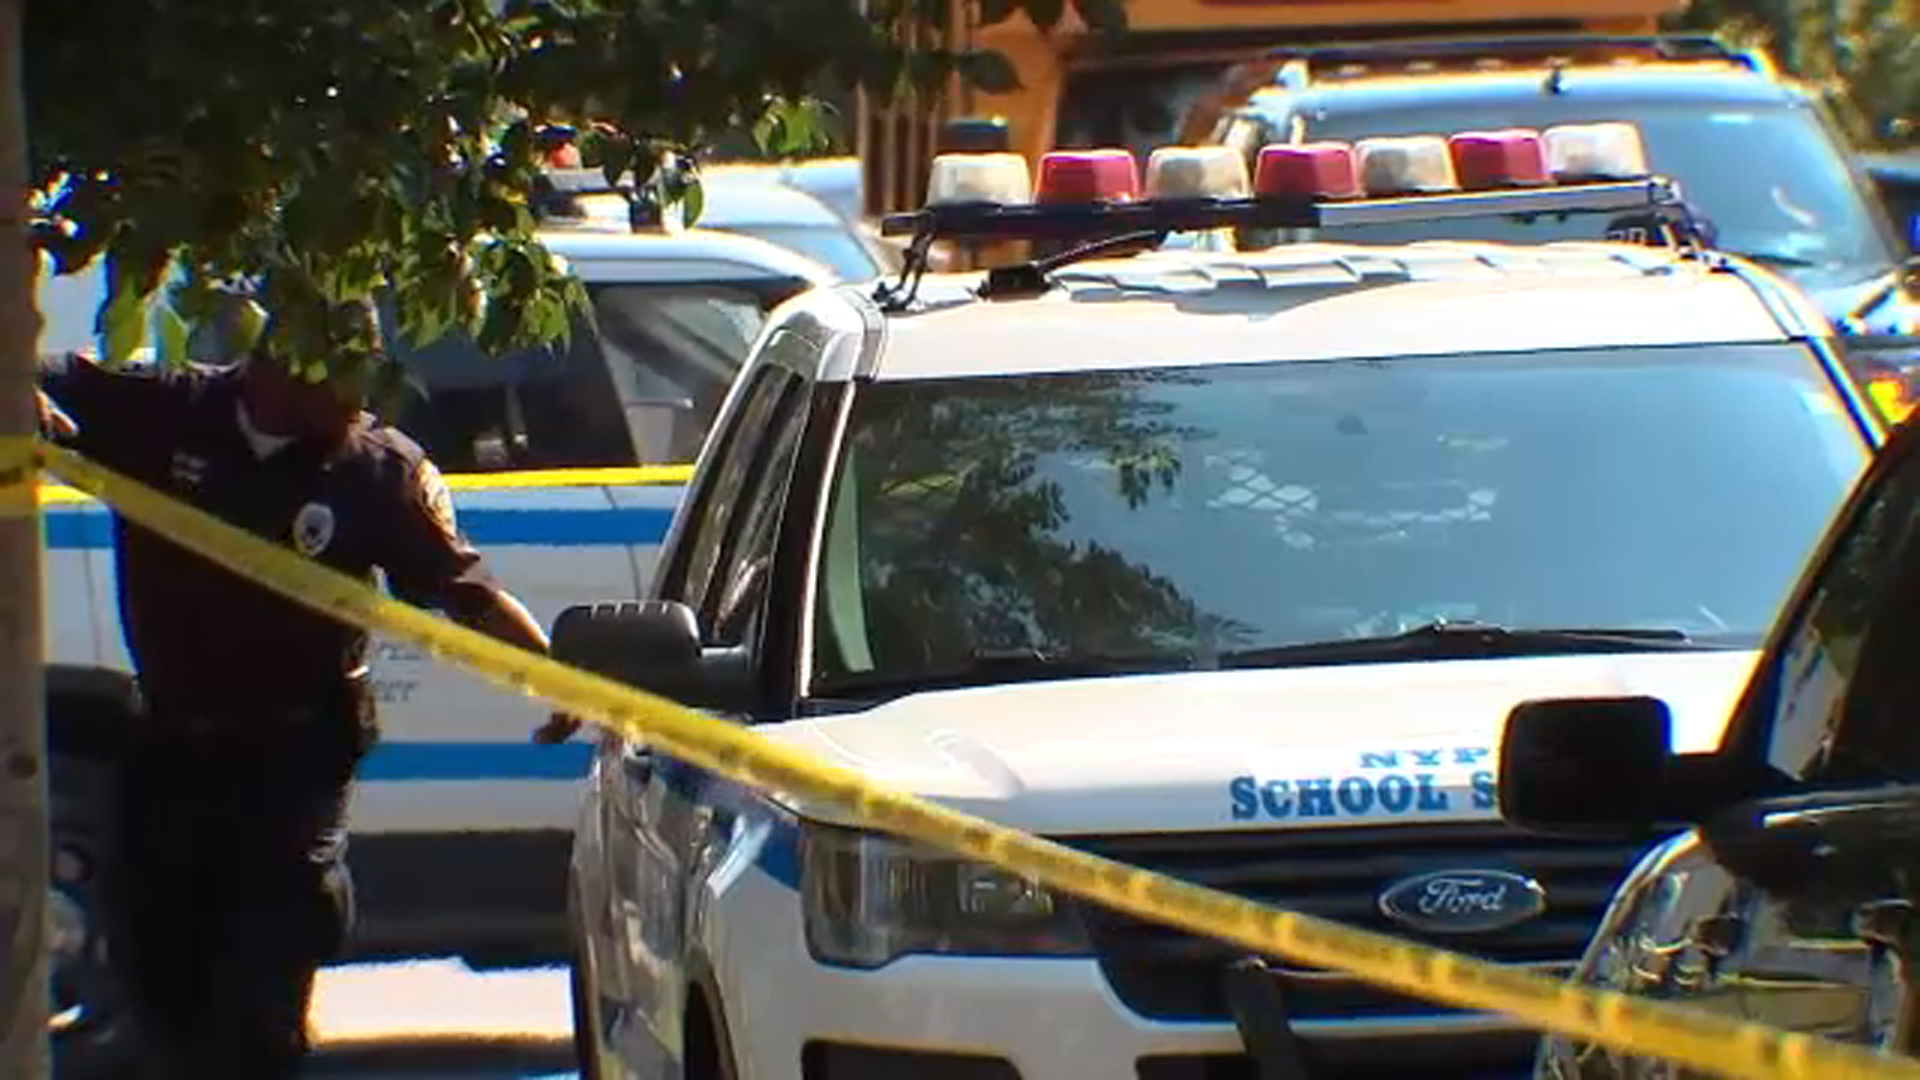 Teen shot in abdomen after leaving school in Brooklyn